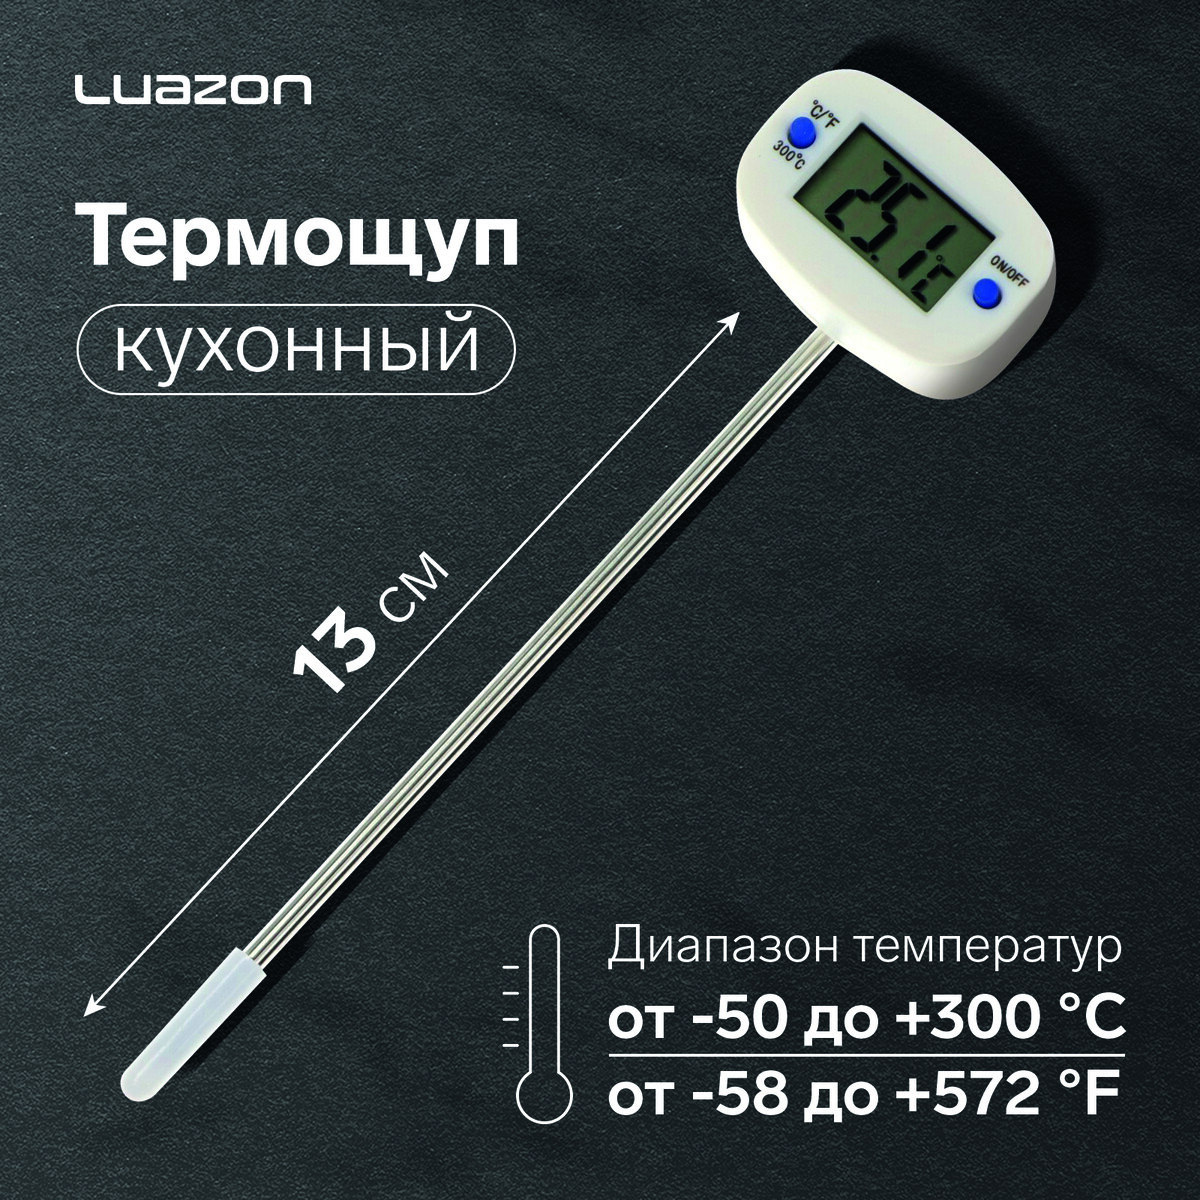 Термощуп кухонный luazon ta-288, максимальная температура 300 °c, от lr44, белый термощуп кухонный luazon ta 288 максимальная температура 300 °c от lr44 белый